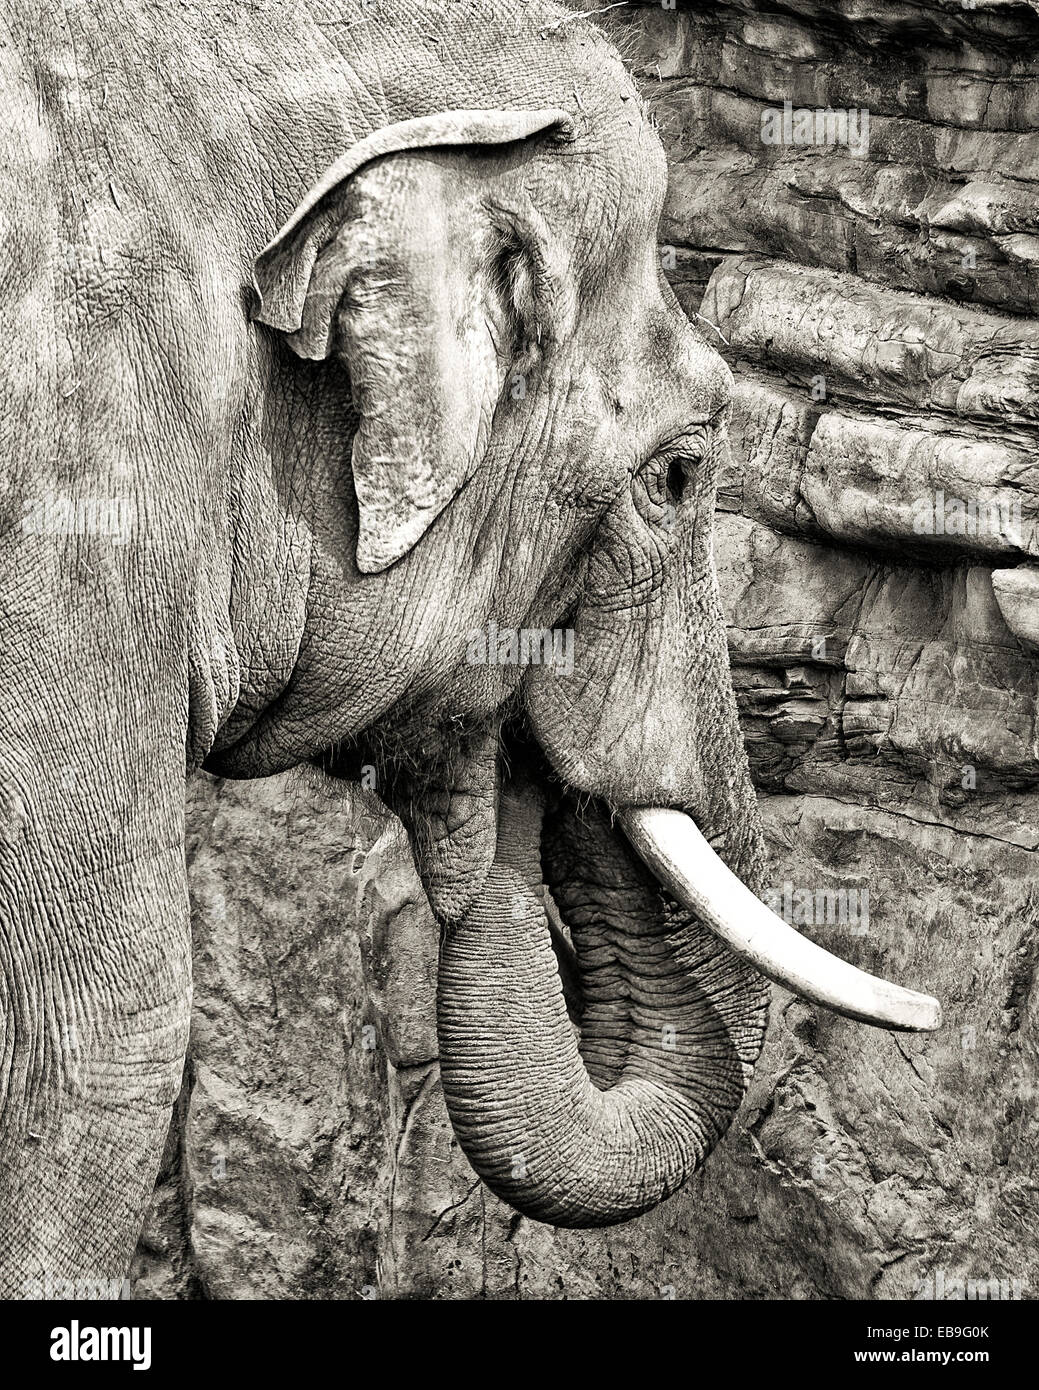 Weibliche asiatische Elefant mit Rüssel in Mund, Fütterung auf Salz von einer Klippe.  Kopf mit Stoßzähnen, HDR, schwarz und weiß Stockfoto